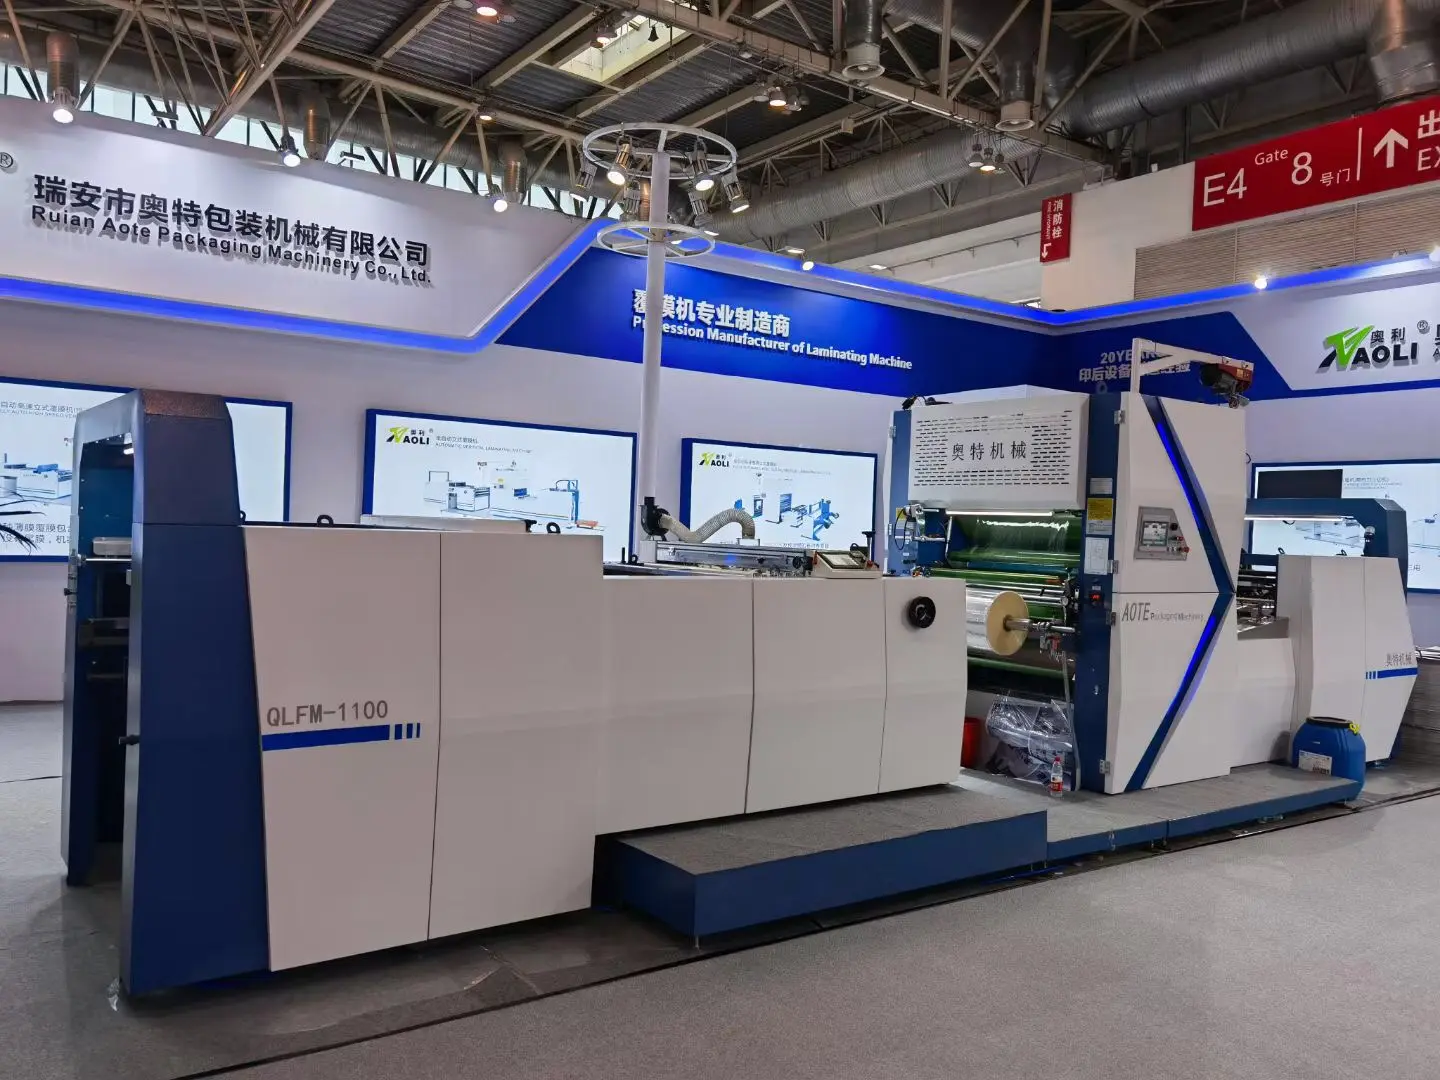 بكين الدولي العاشر معرض تكنولوجيا الطباعة